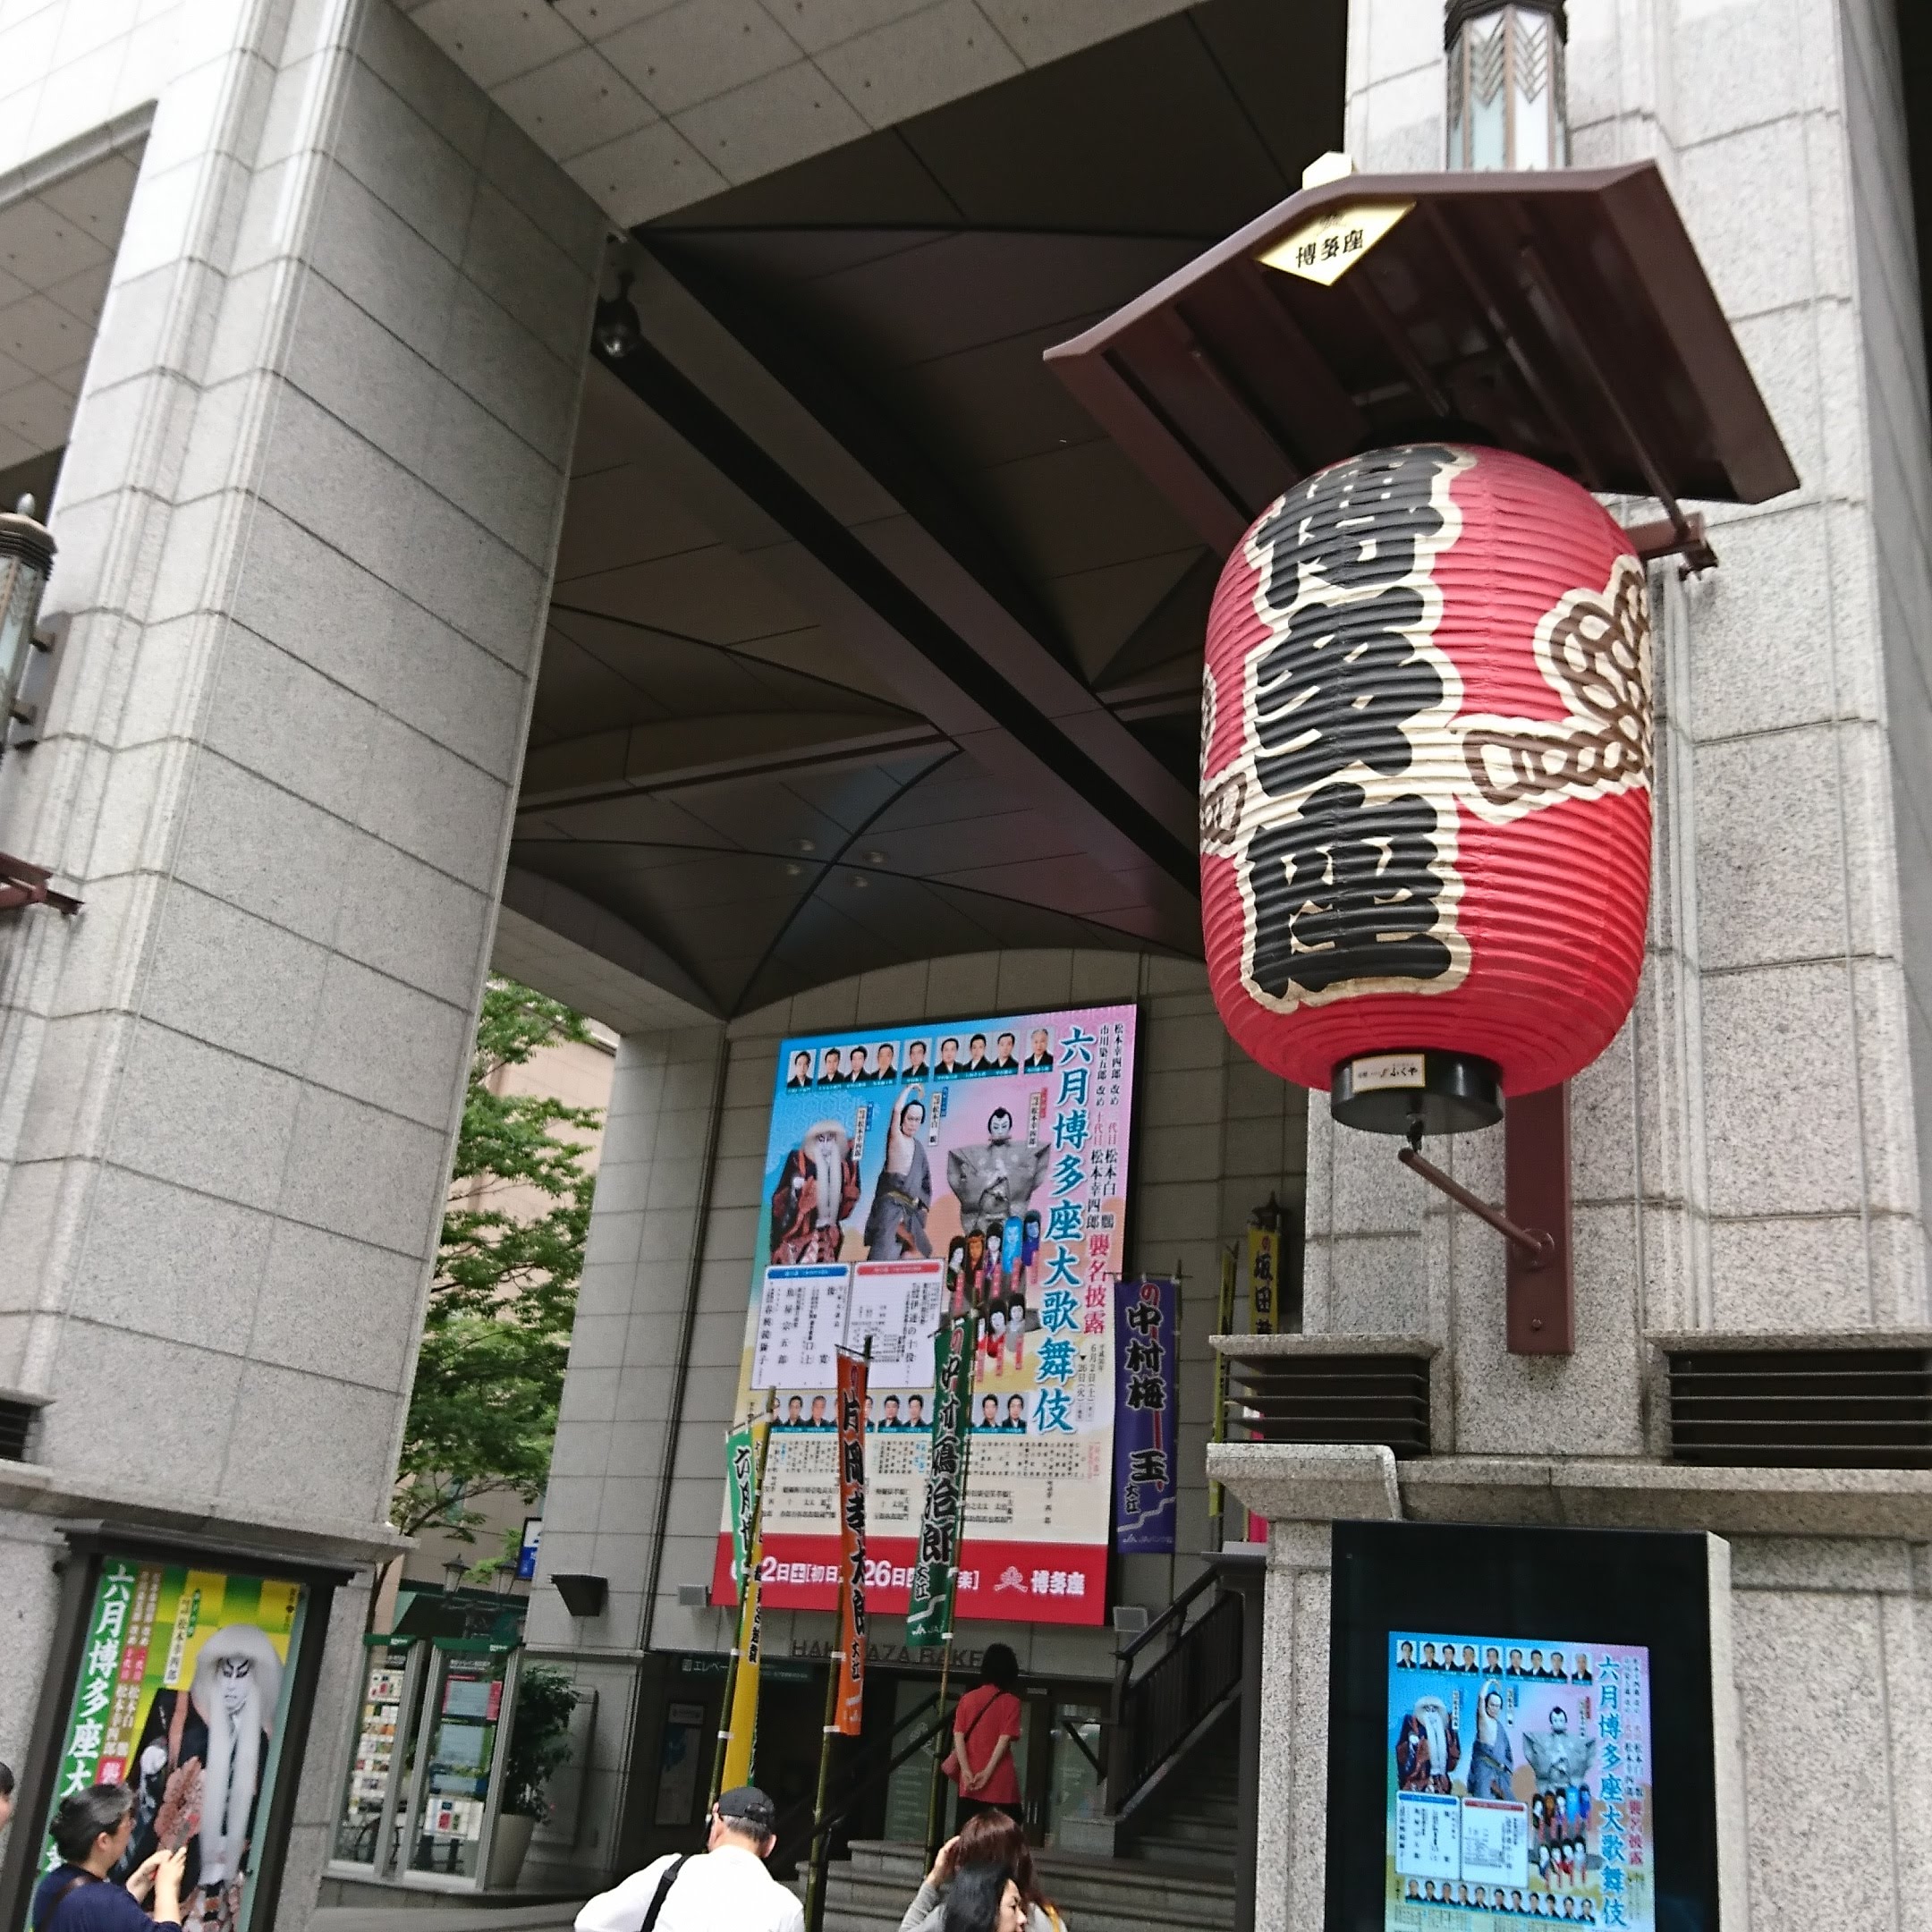 博多座 にて 歌舞伎 を楽しむ